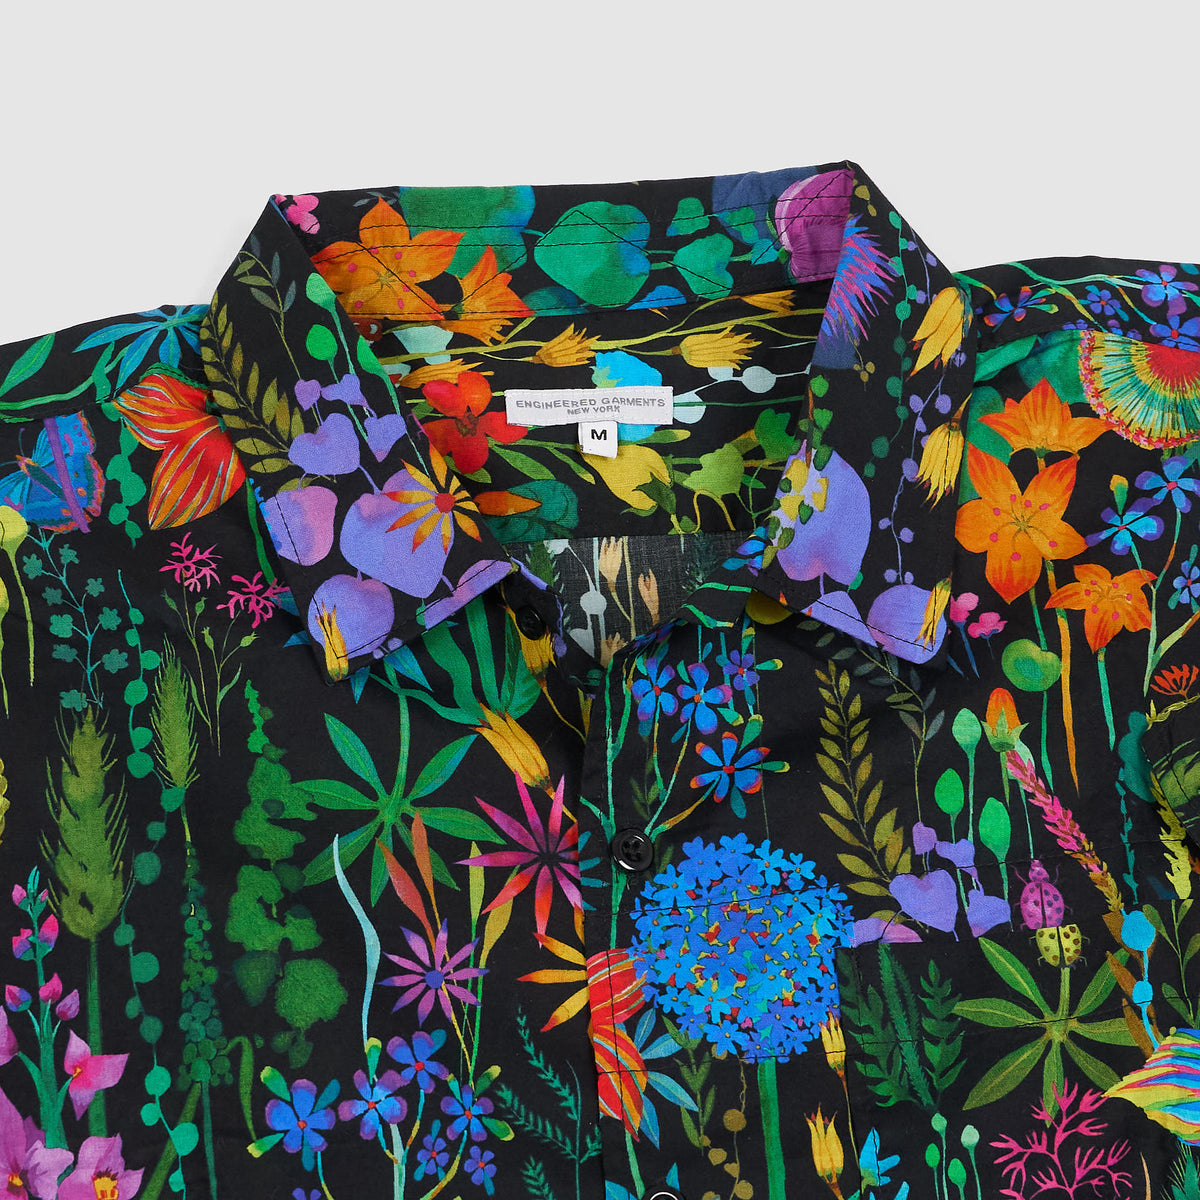 Engineered Garment Hawaiian Short Sleeve Floral Shirt